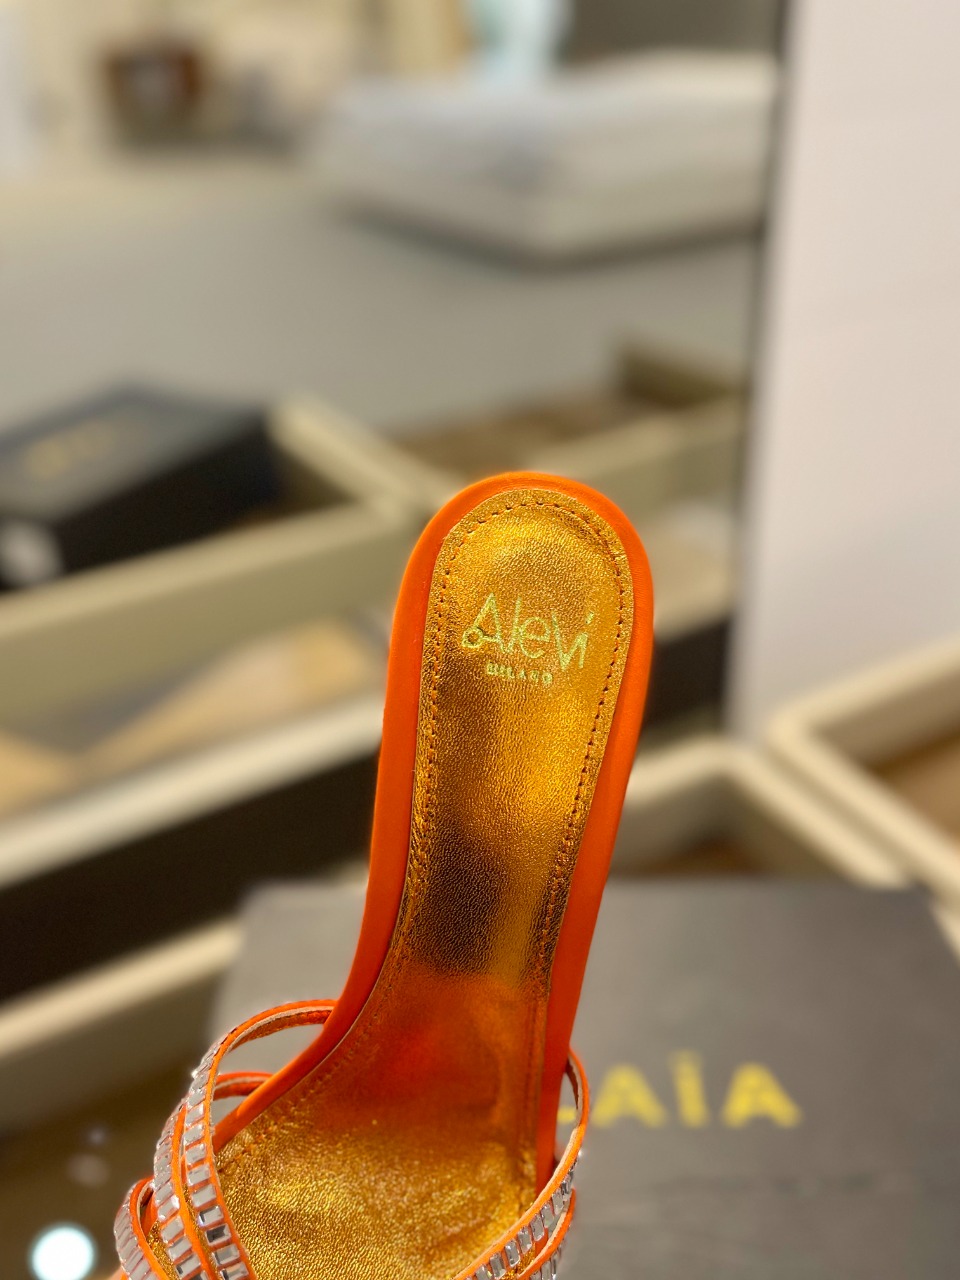 AleviMlano阿列维姆拉诺AleviMilanoSally高跟走秀半拖一个享有盛誉的奢侈鞋品牌由两